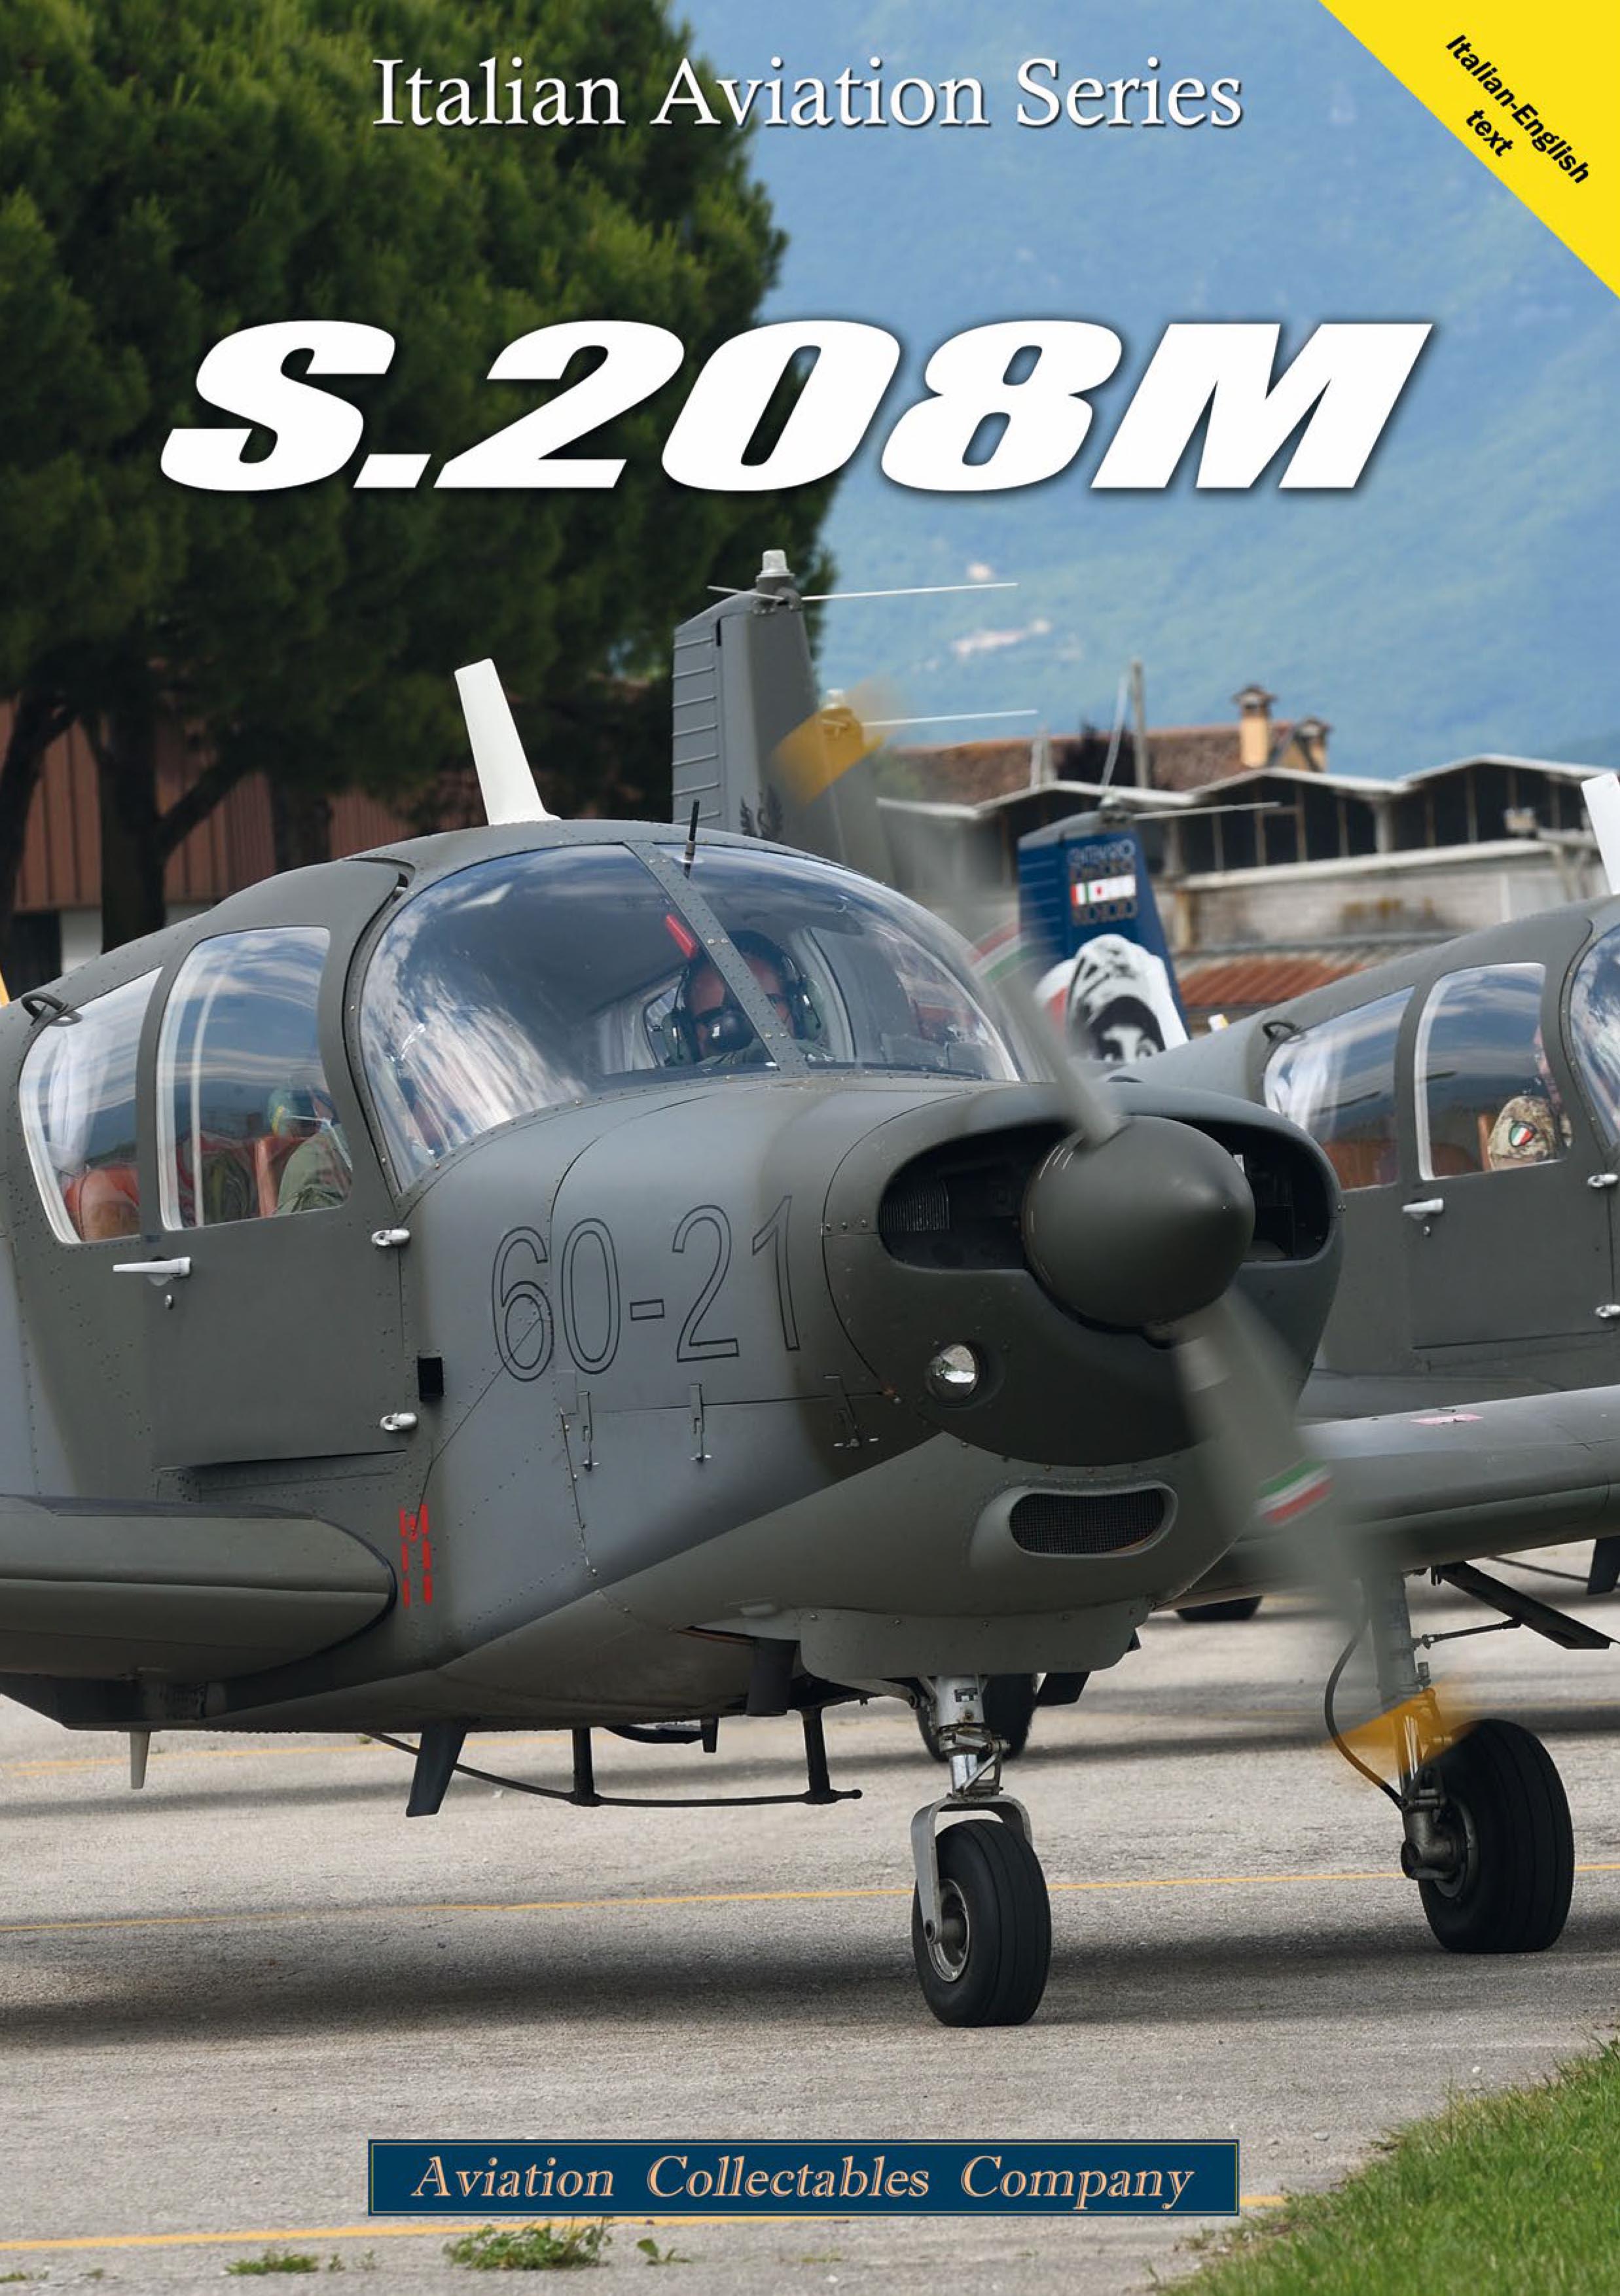 S.208M: la nuova monografia della collana Italian Aviation Series